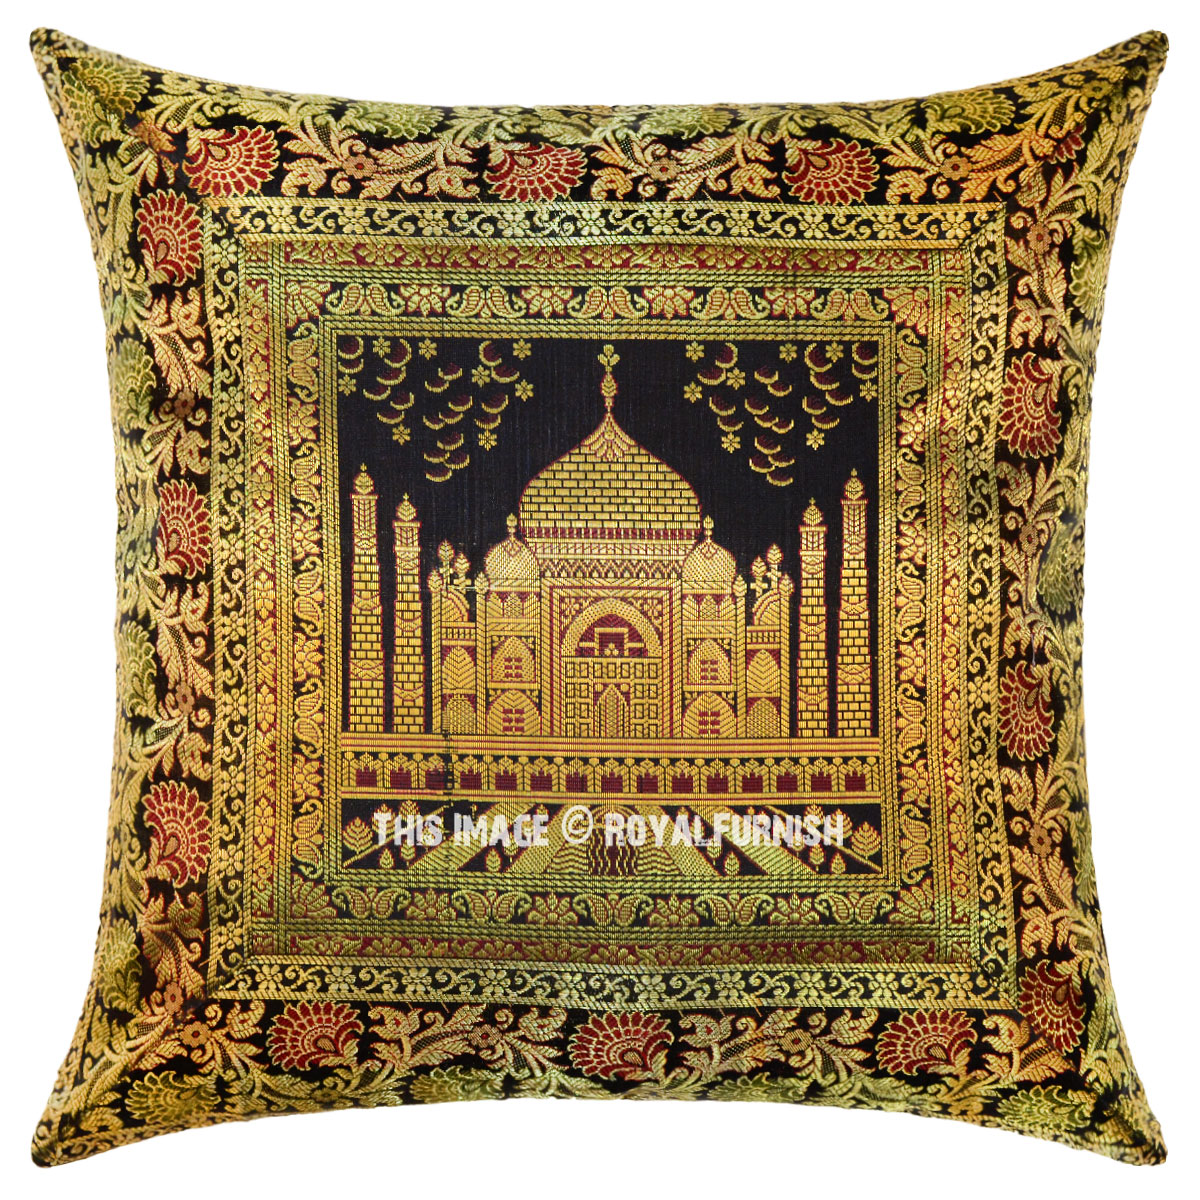 Black Color Decorative Tajmahal Silk Brocade Throw Pillow Cover 16X16